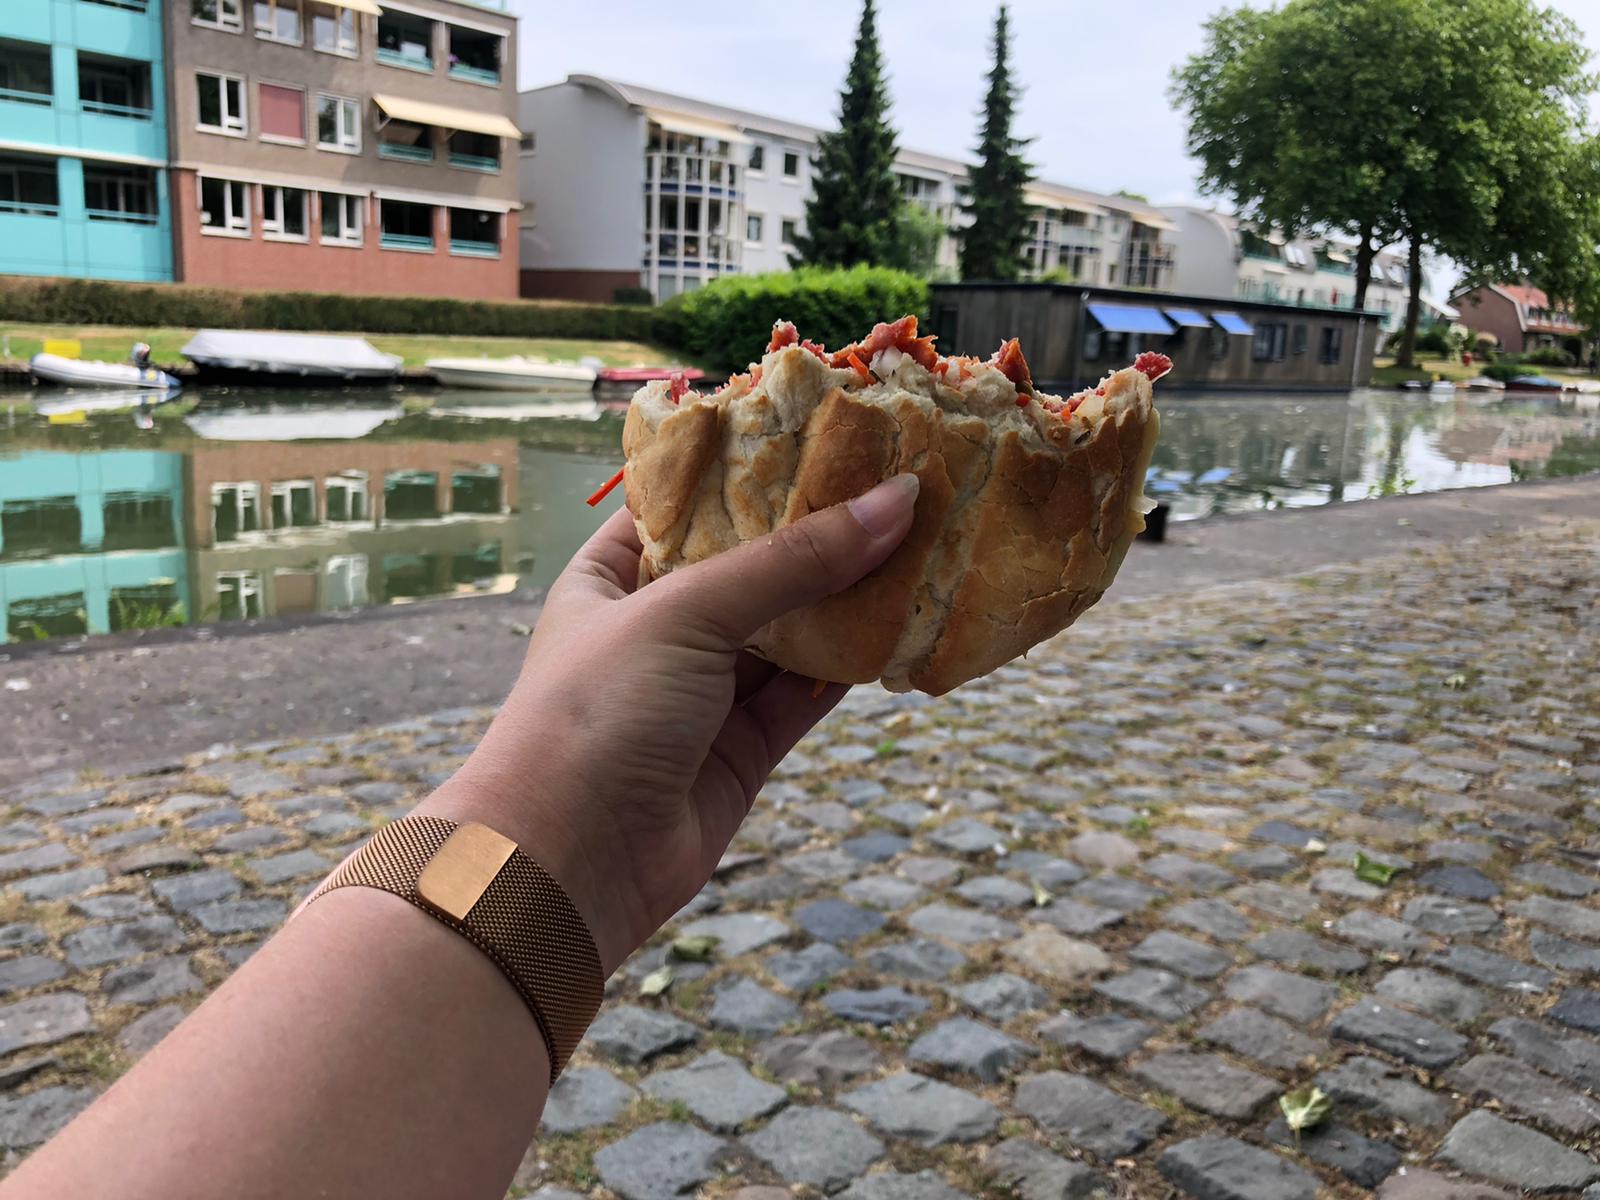 Broodje eten in Vreeswijk